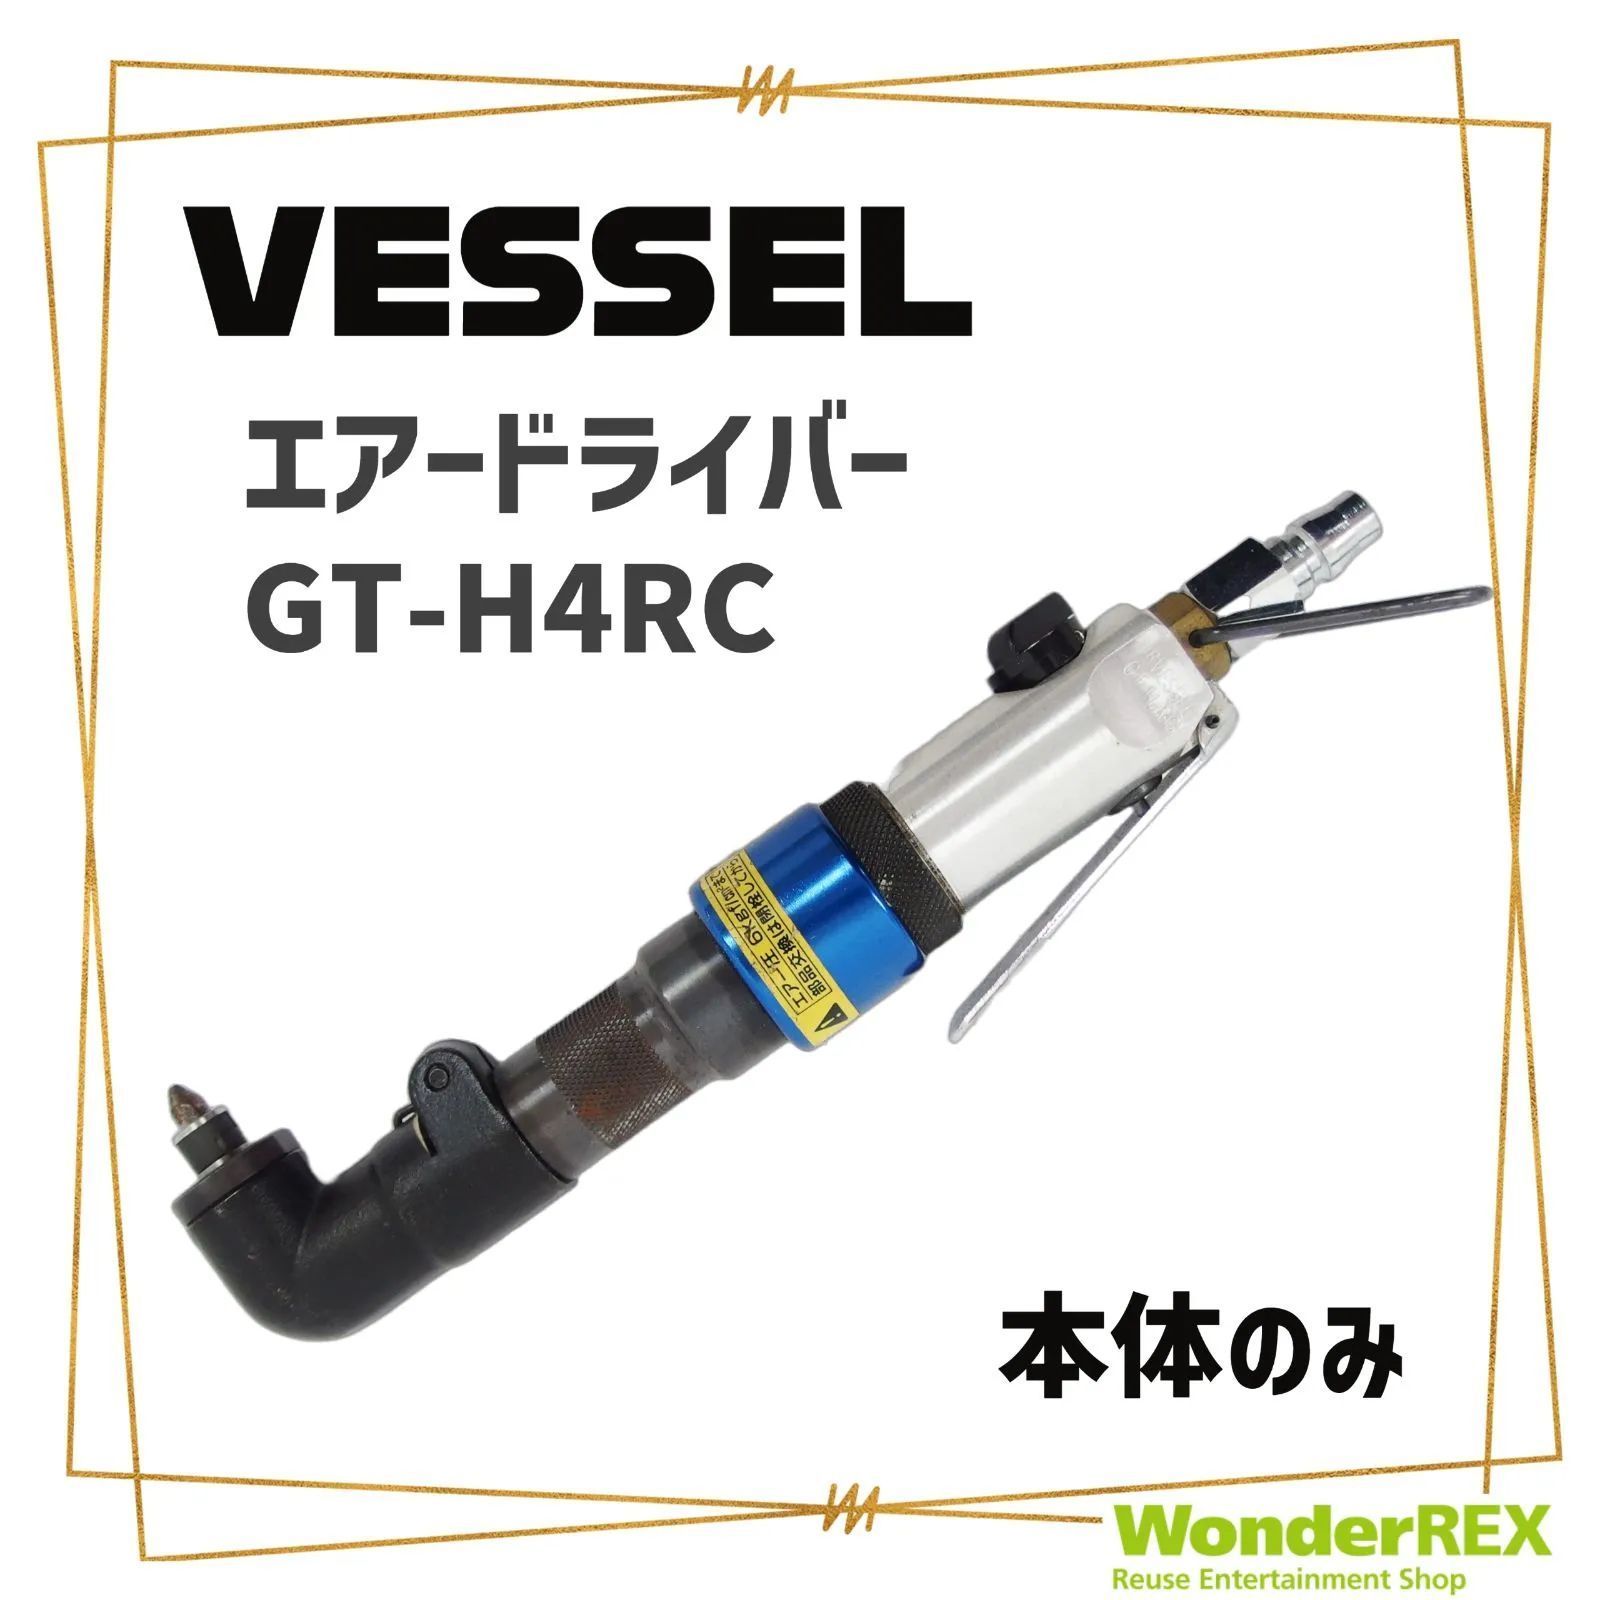 ベッセル(VESSEL) エアードライバー減速式 GT-H4R-